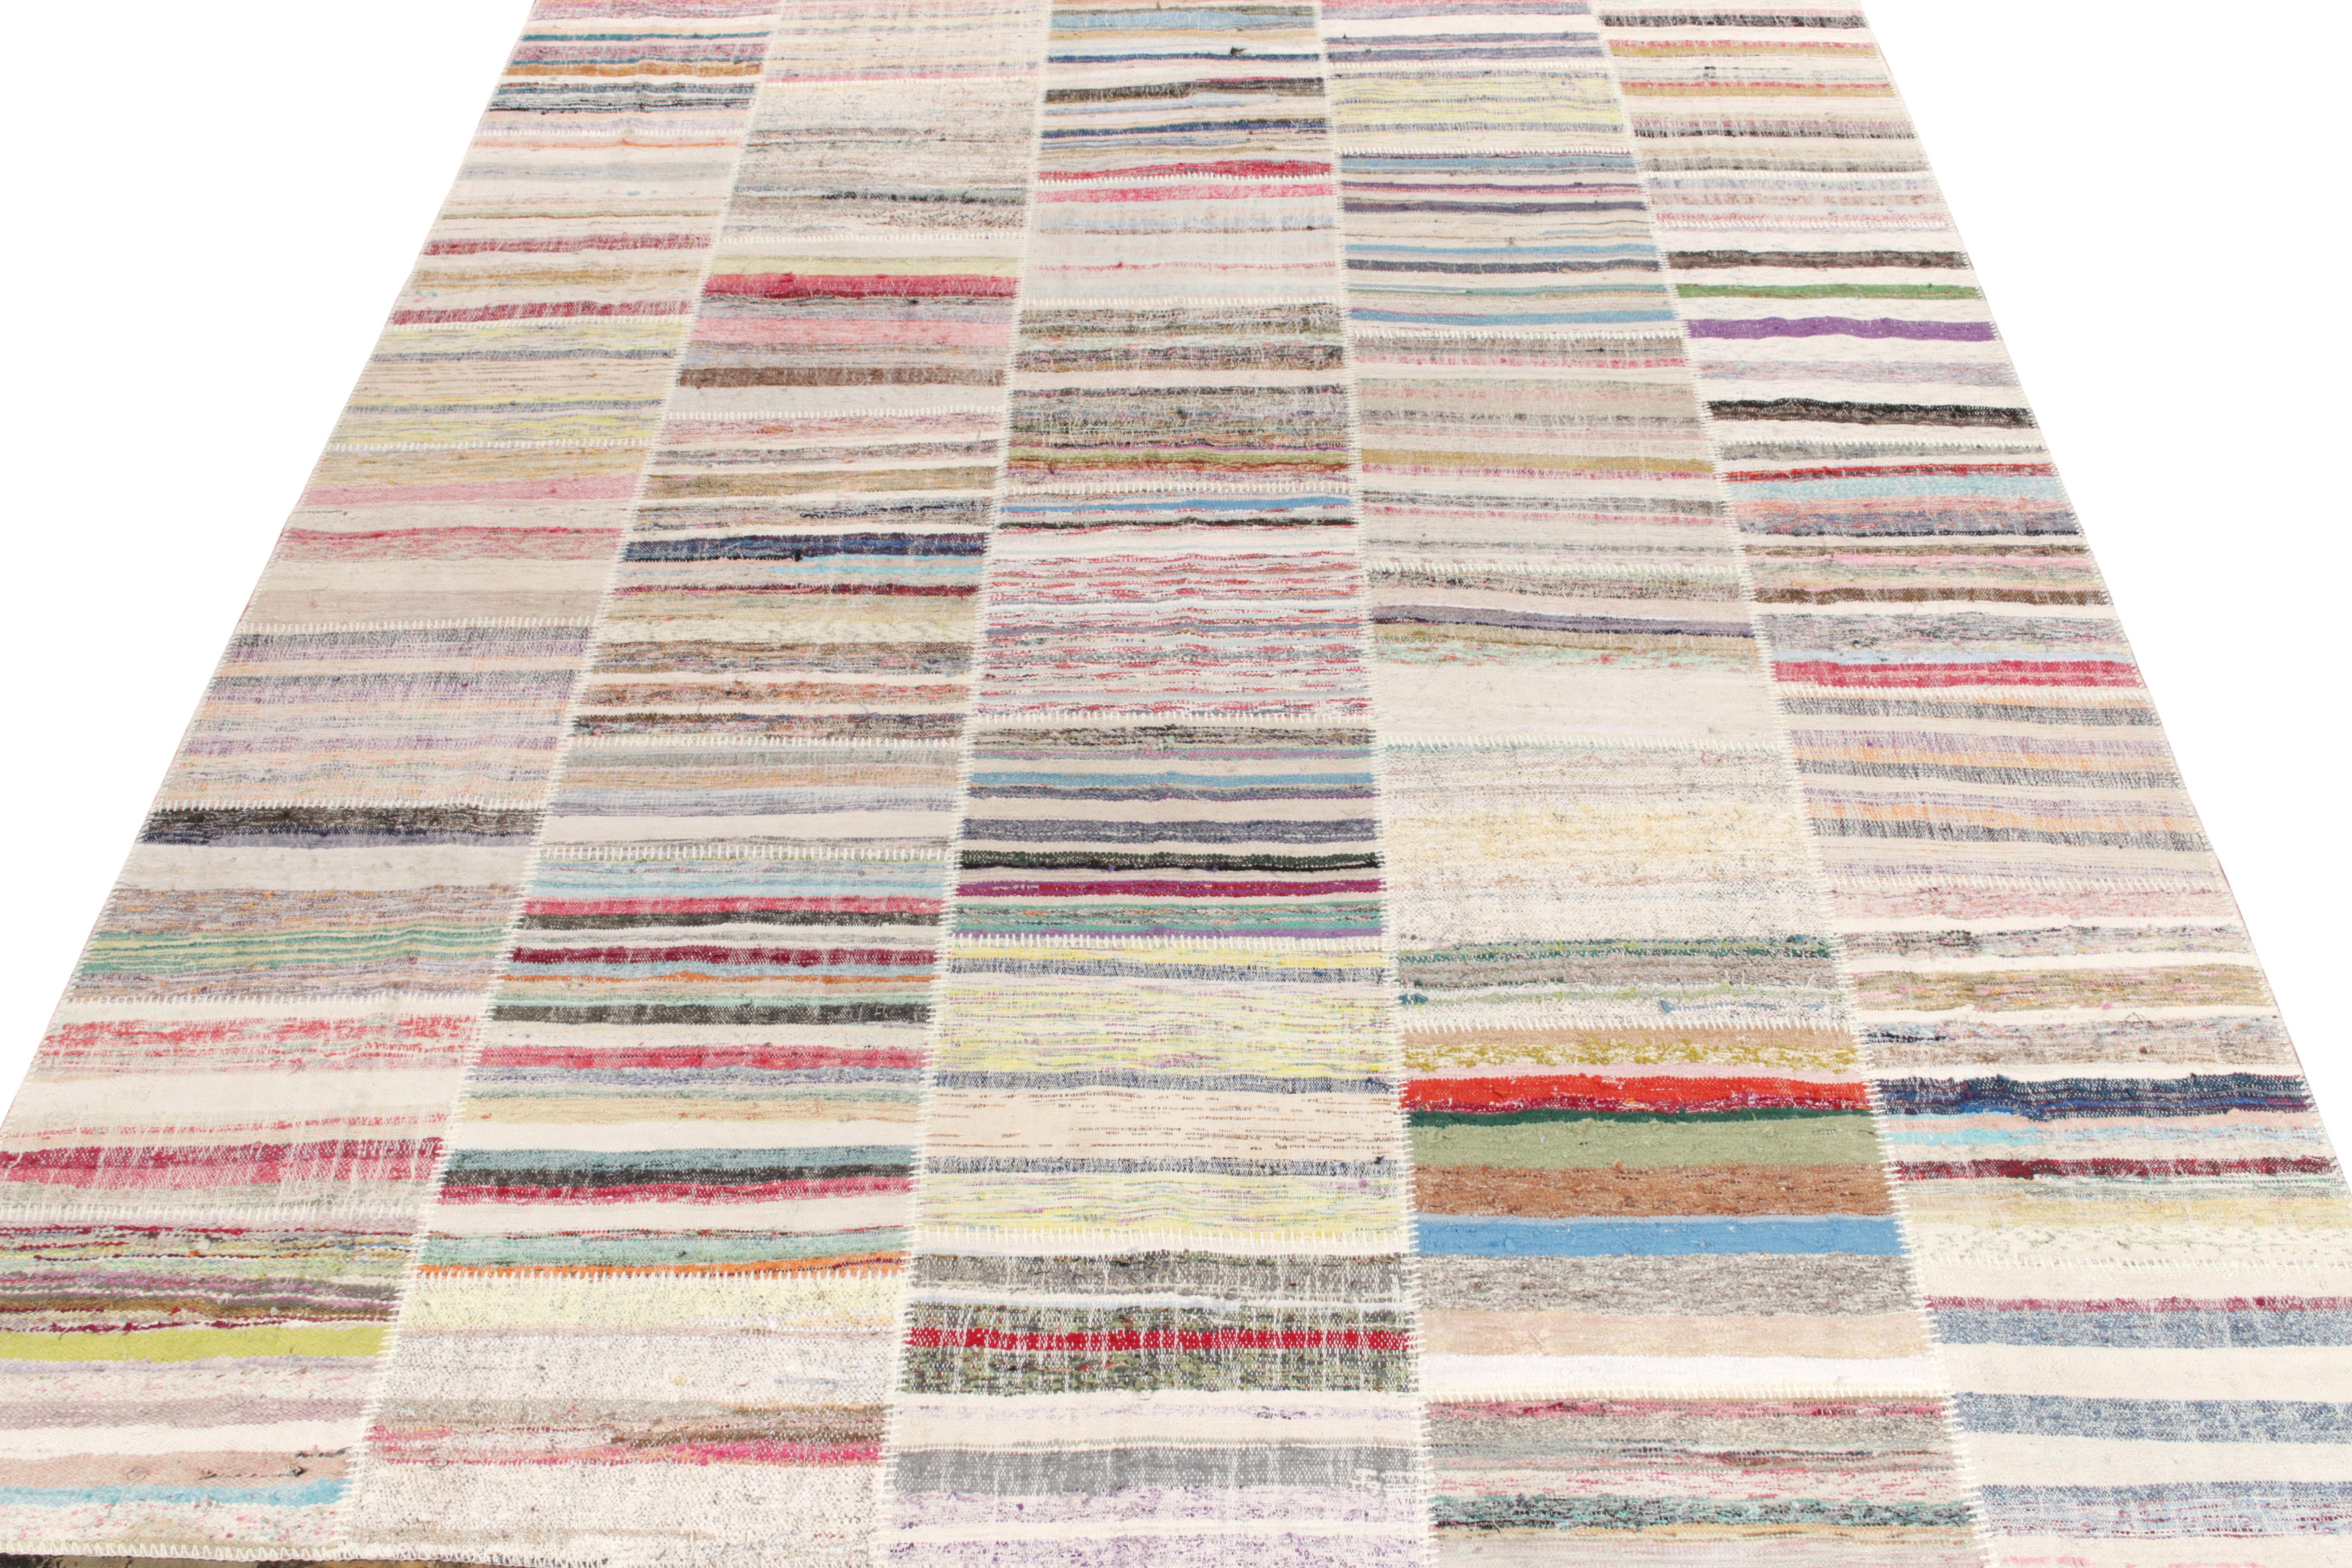 Rug & Kilim ist stolz darauf, seine künstlerische Vision von Patchwork-Kelims zu präsentieren, die Vintage-Garne zu einzigartigen Kunstwerken umgestalten. Dieses 9 x 12 große Sammlerstück zeichnet sich durch ein gestreiftes Muster aus, das in